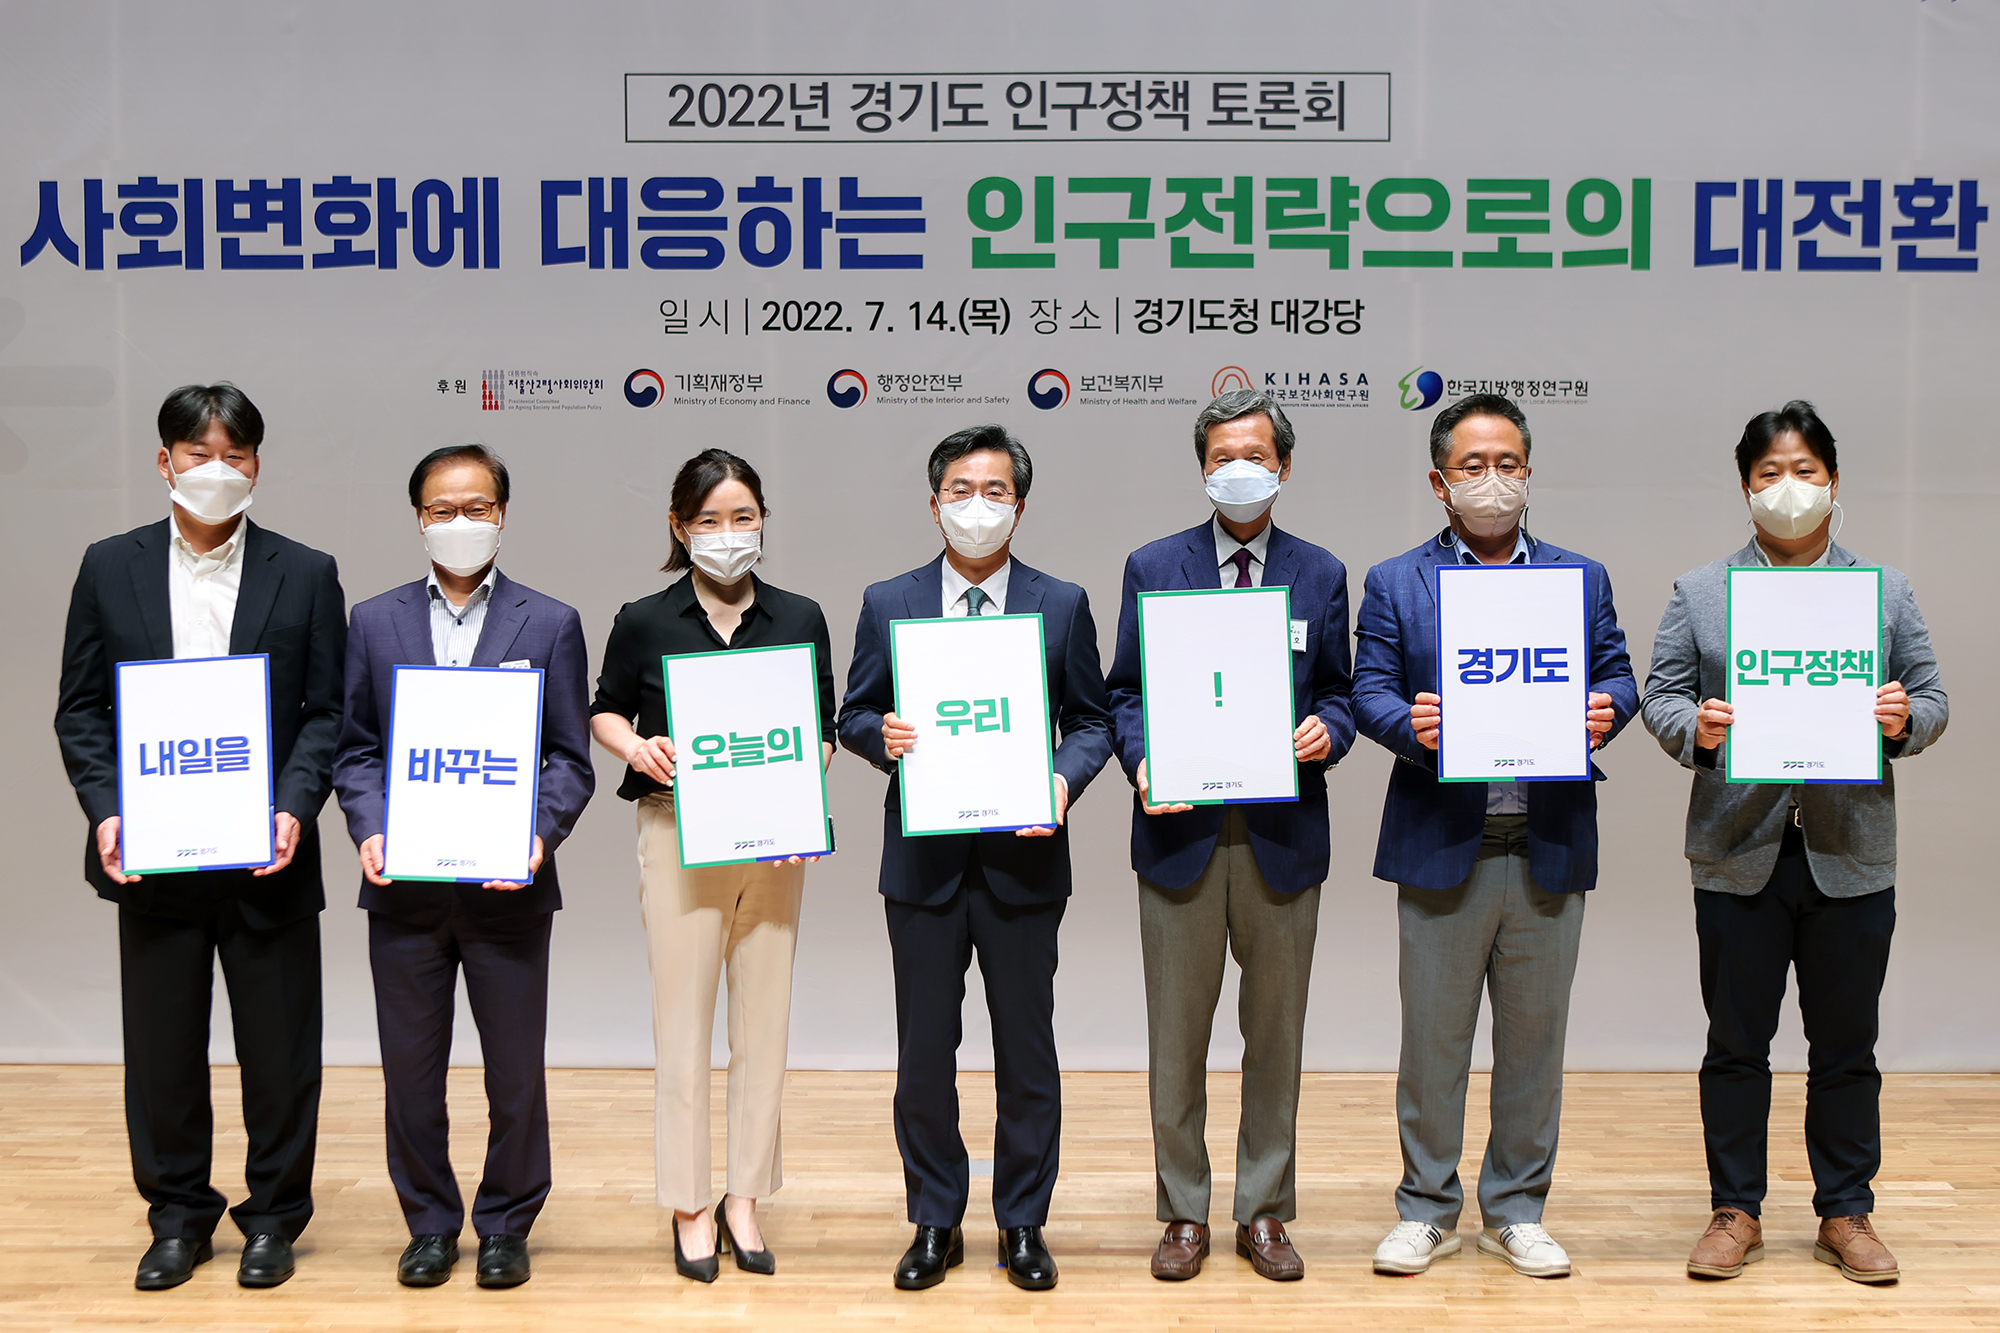 14일 도청 대강당에서 열린 ‘2022년 경기도 인구정책 토론회’에서 김동연 경기도지사(왼쪽에서 4번째)를 비롯한 참석 인사들이 기념사진을 찍고 있다. 